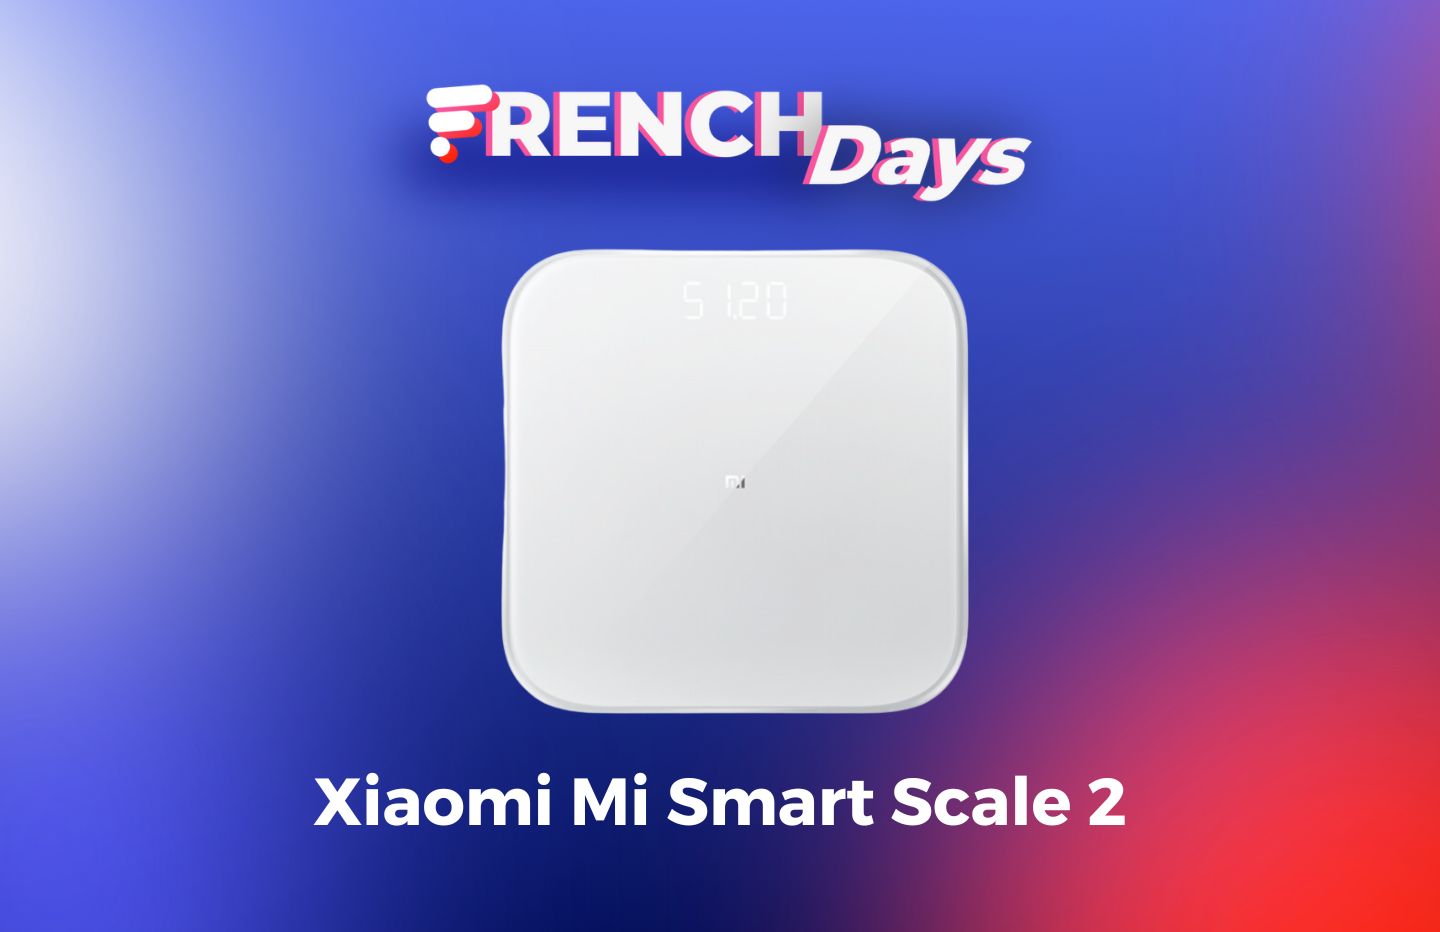 La fameuse balance connectée Xiaomi est au prix hallucinant de 14,99 euros  - Le Parisien